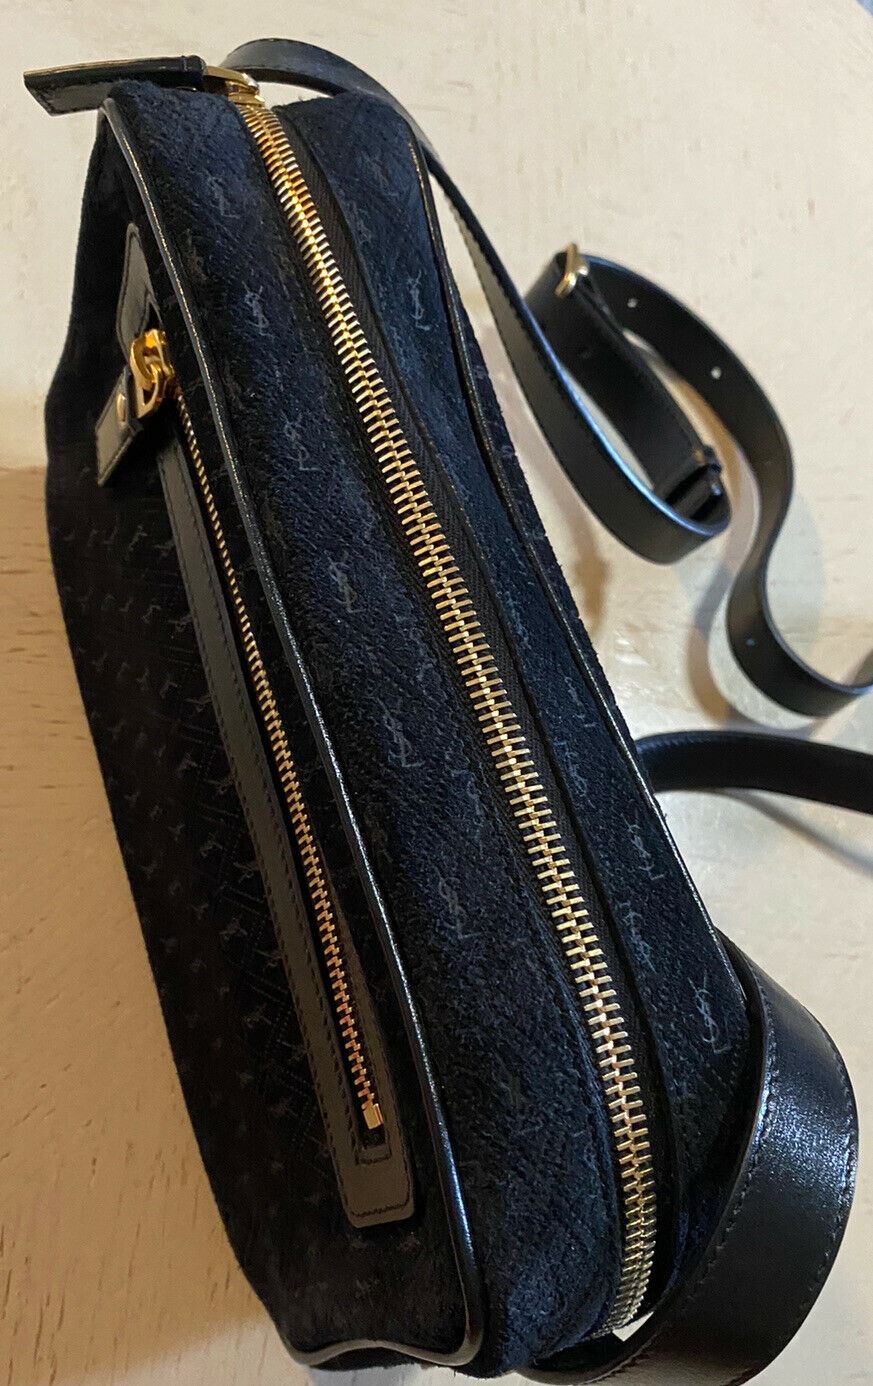 Новая кожаная/замшевая сумка через плечо Saint Laurent за 1850 долларов, черная 568608